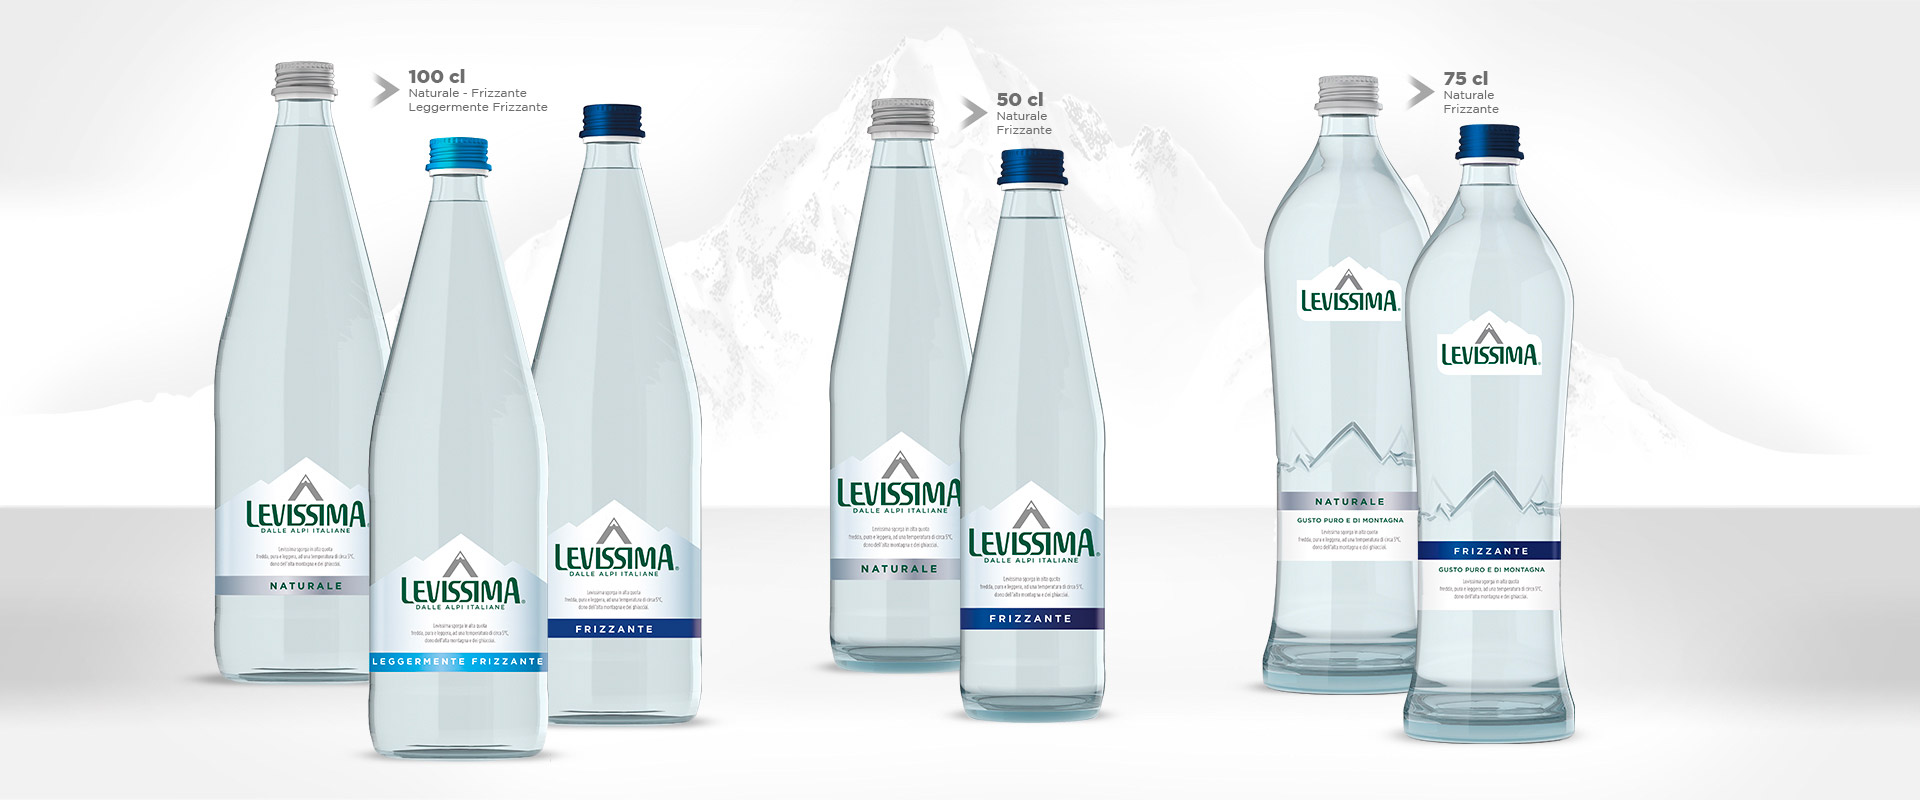 Levissima glass bottle sizes